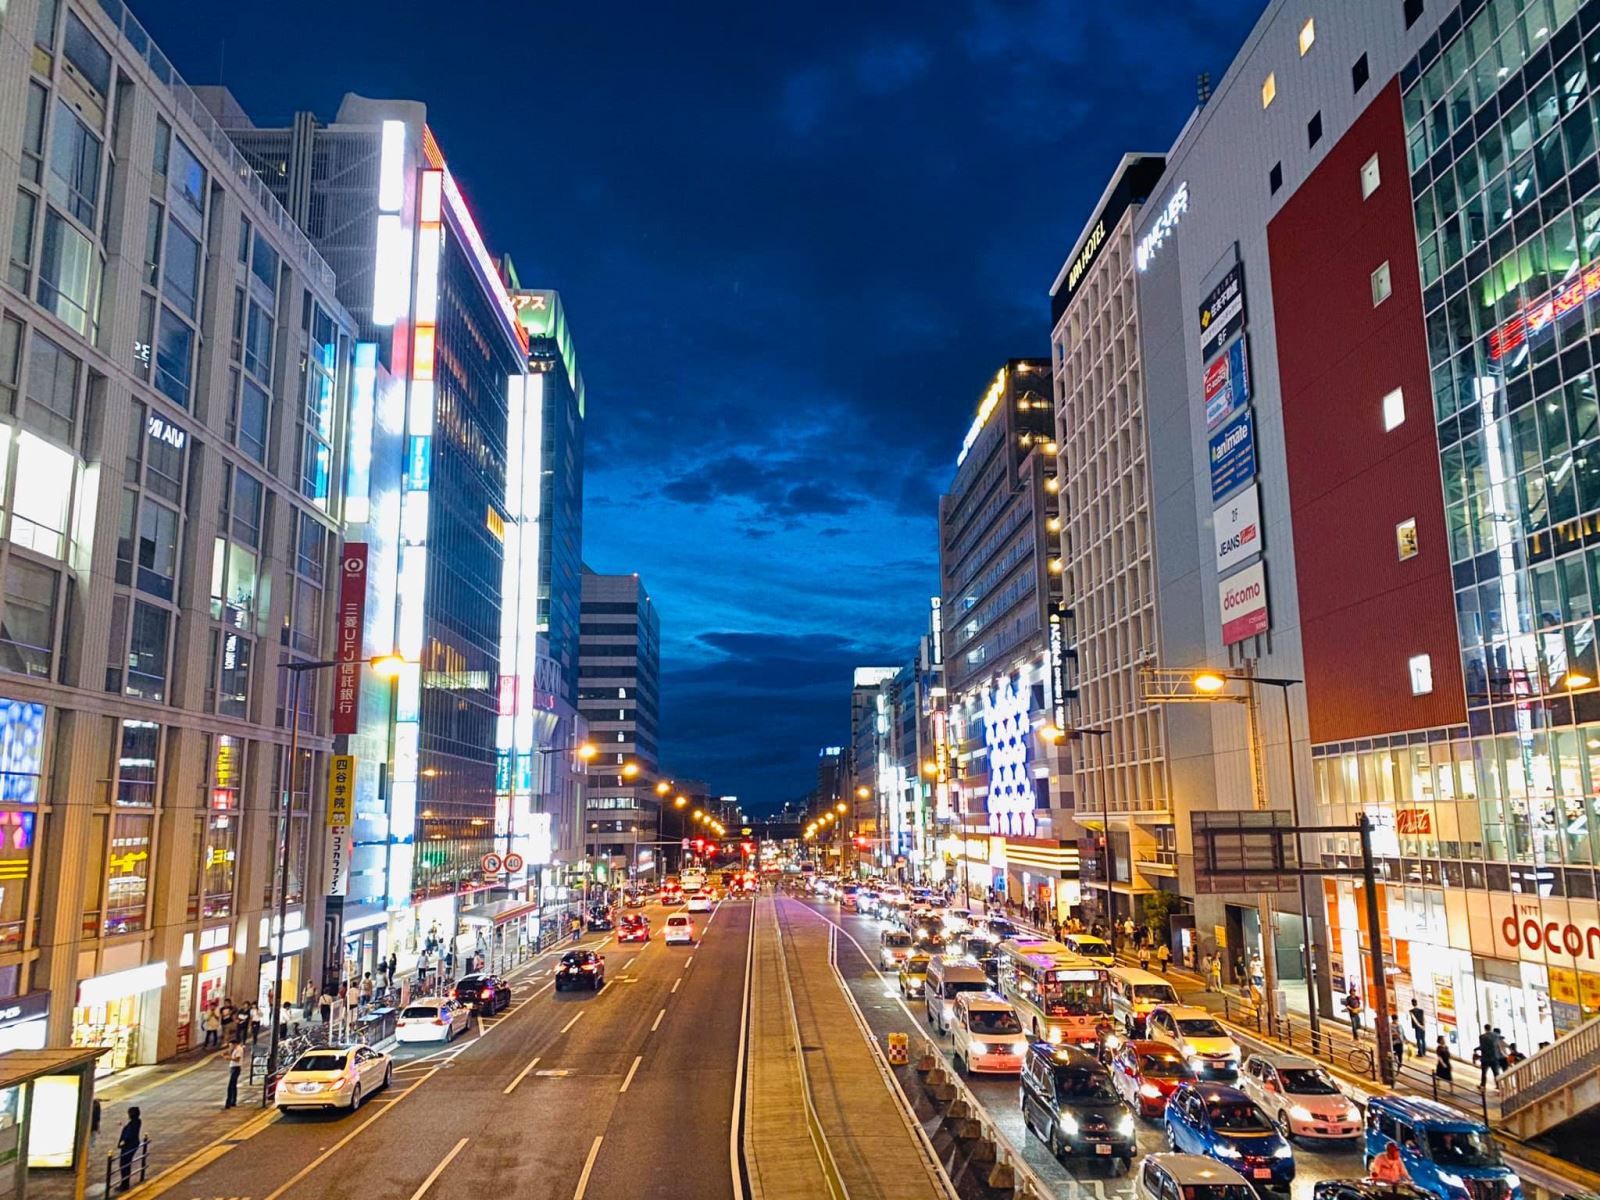 Kinh nghiệm du lịch Osaka – Nhật Bản tự túc trong 3 ngày 2 đêm.